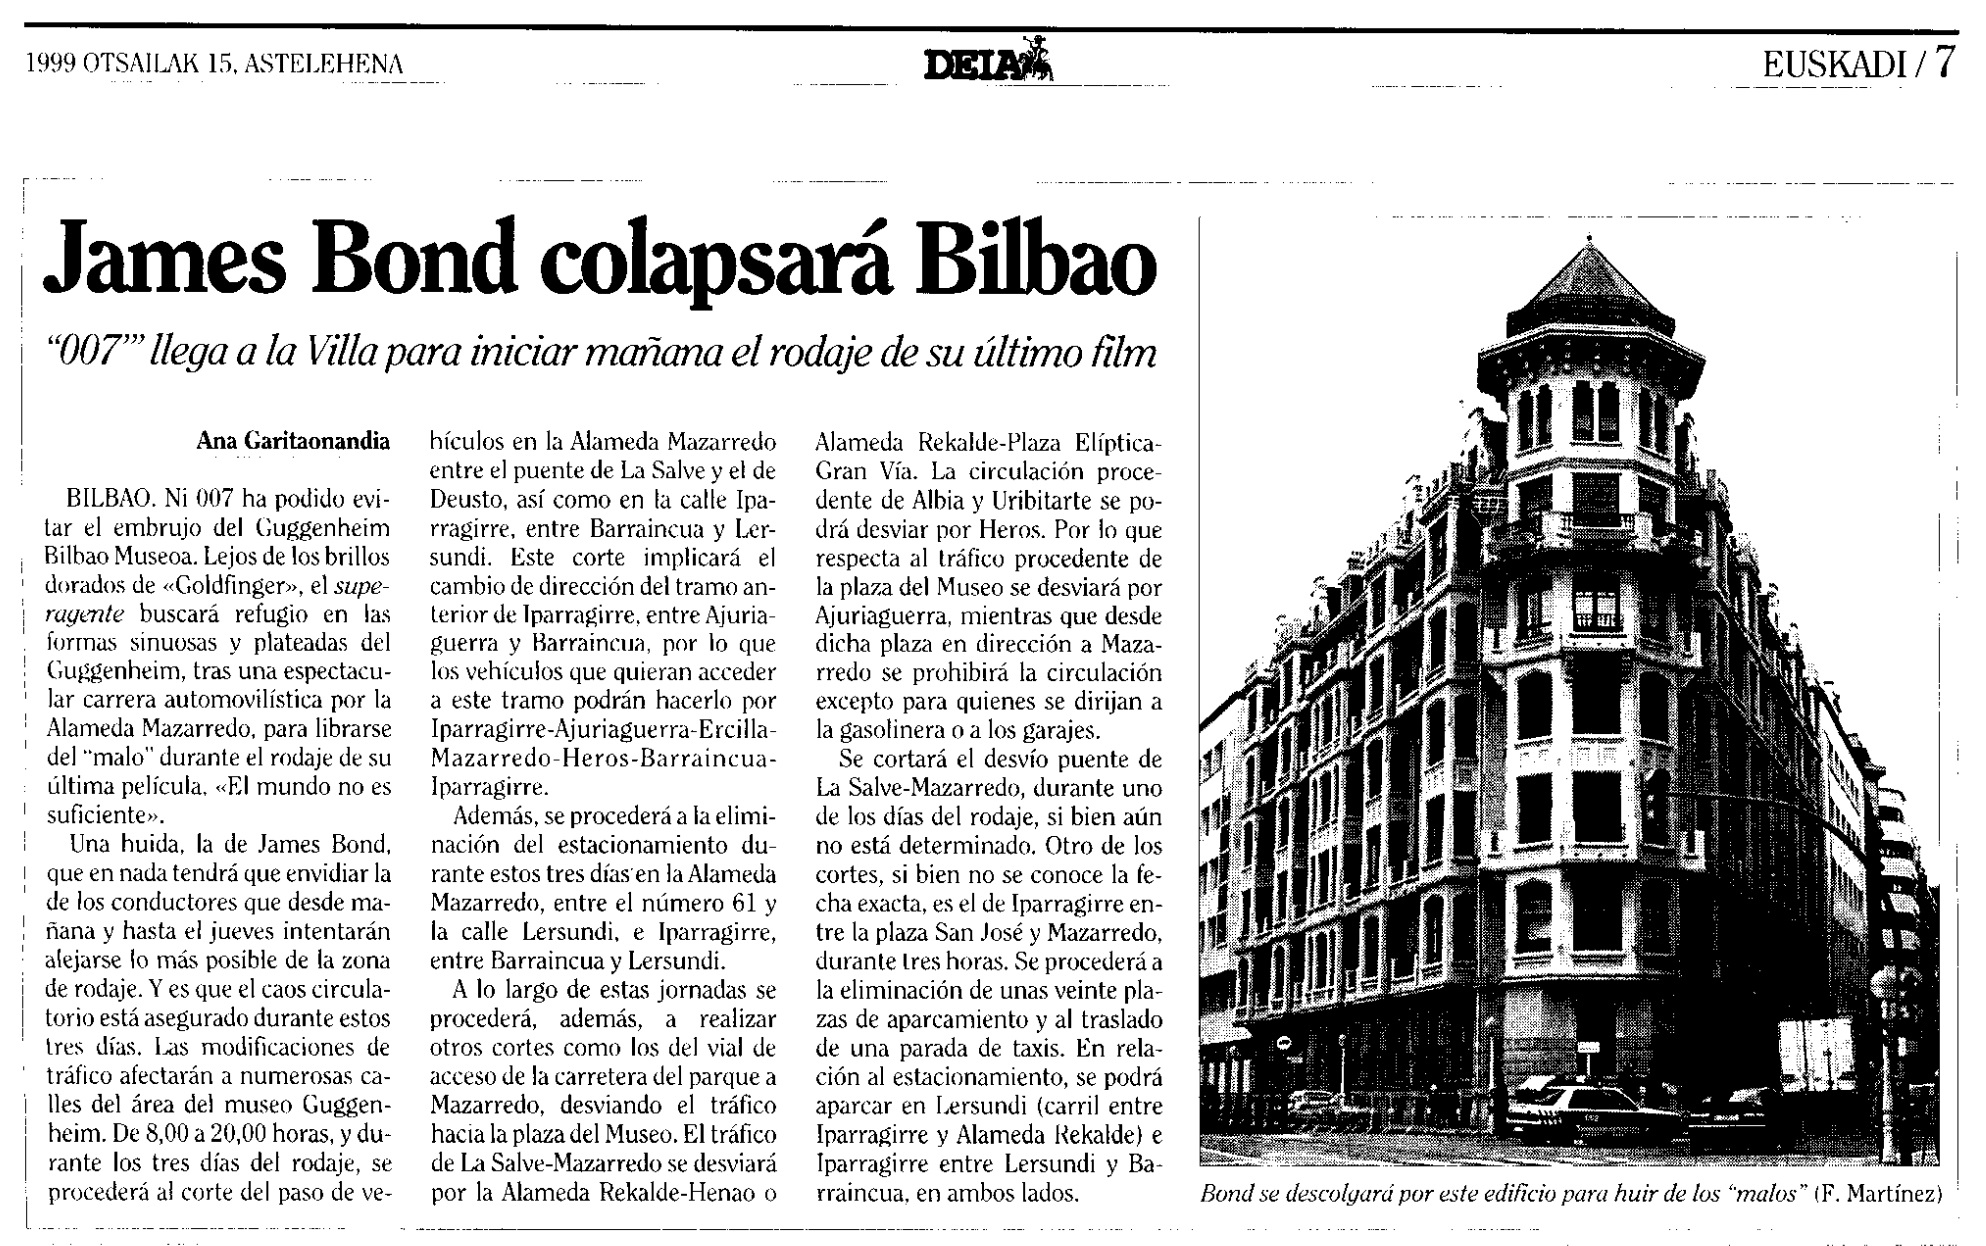 19 1999 02 15 Deia Bilbao 07 Rodaje Bilbao